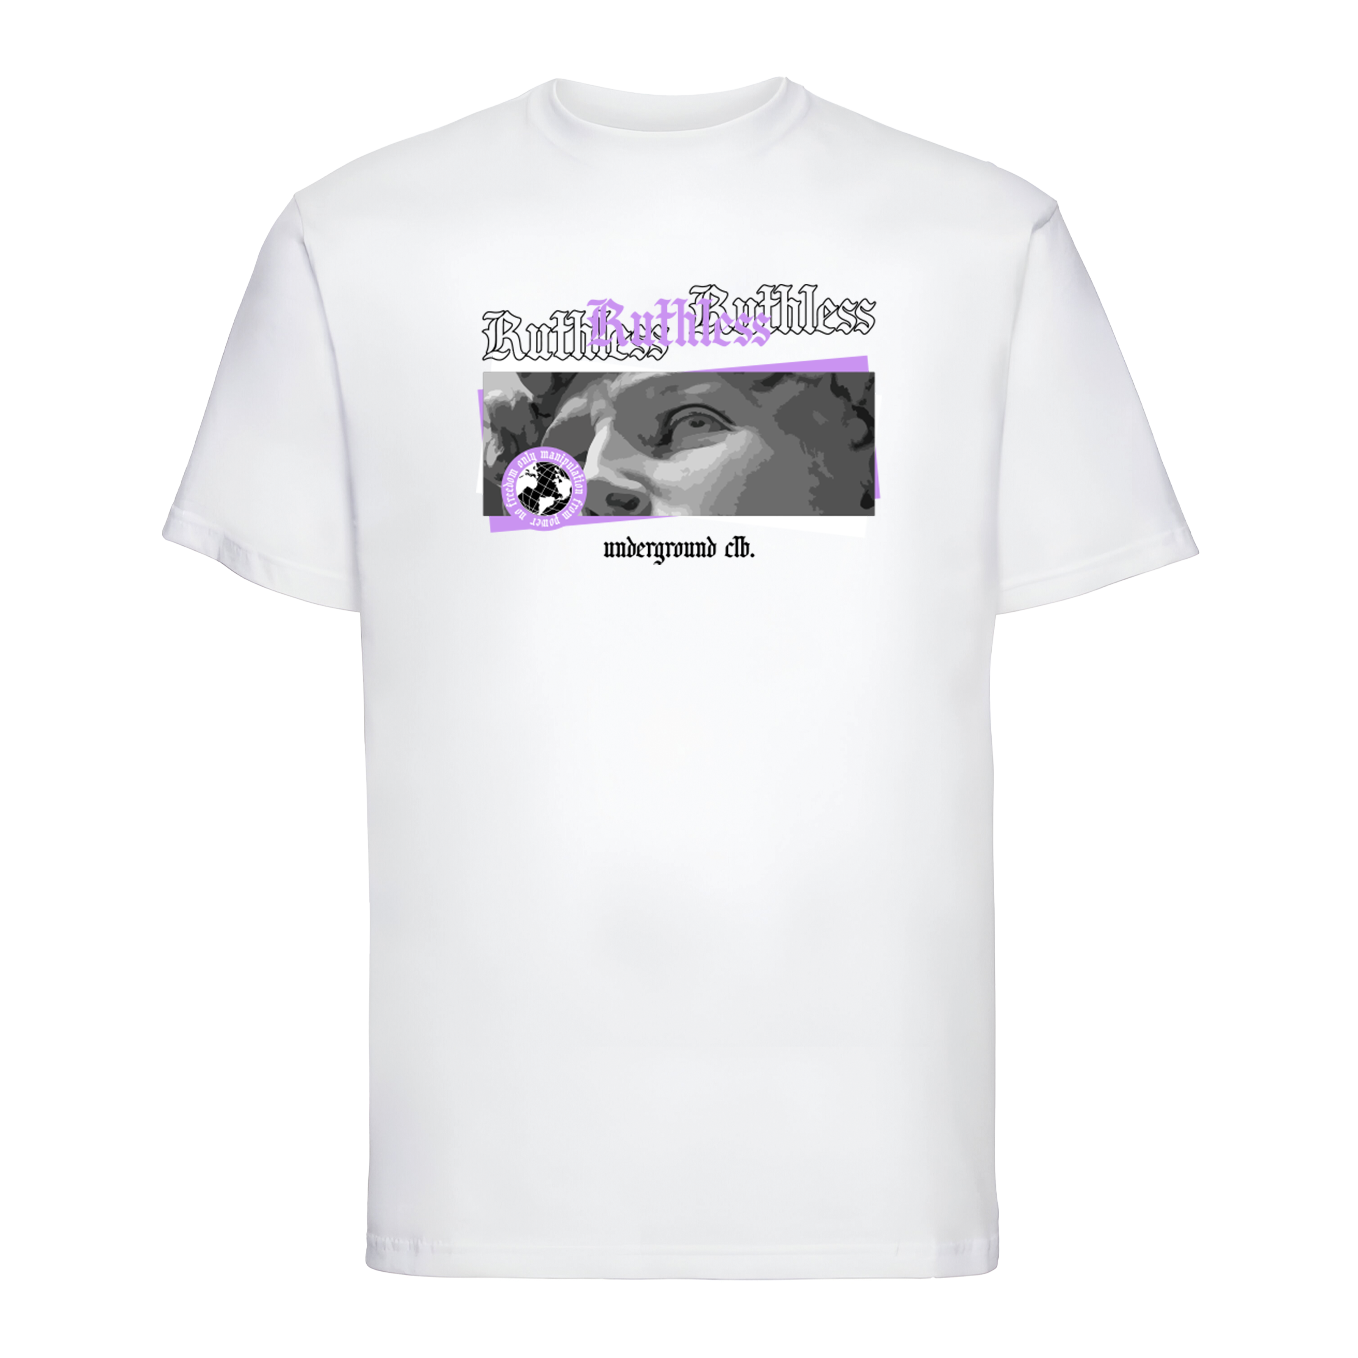 T-shirt "Ruthless"